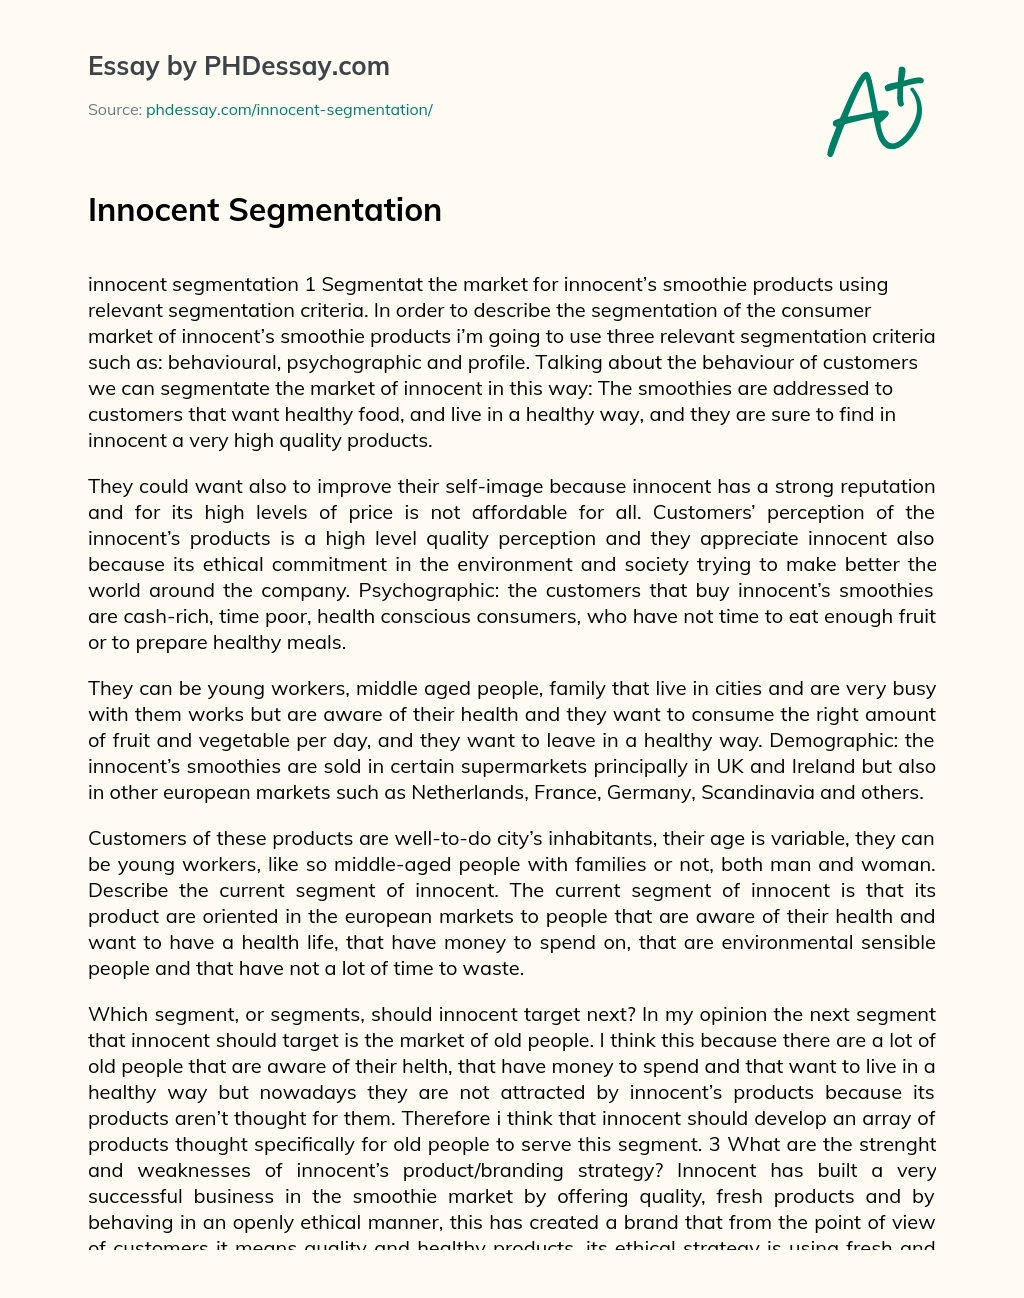 Innocent Segmentation essay